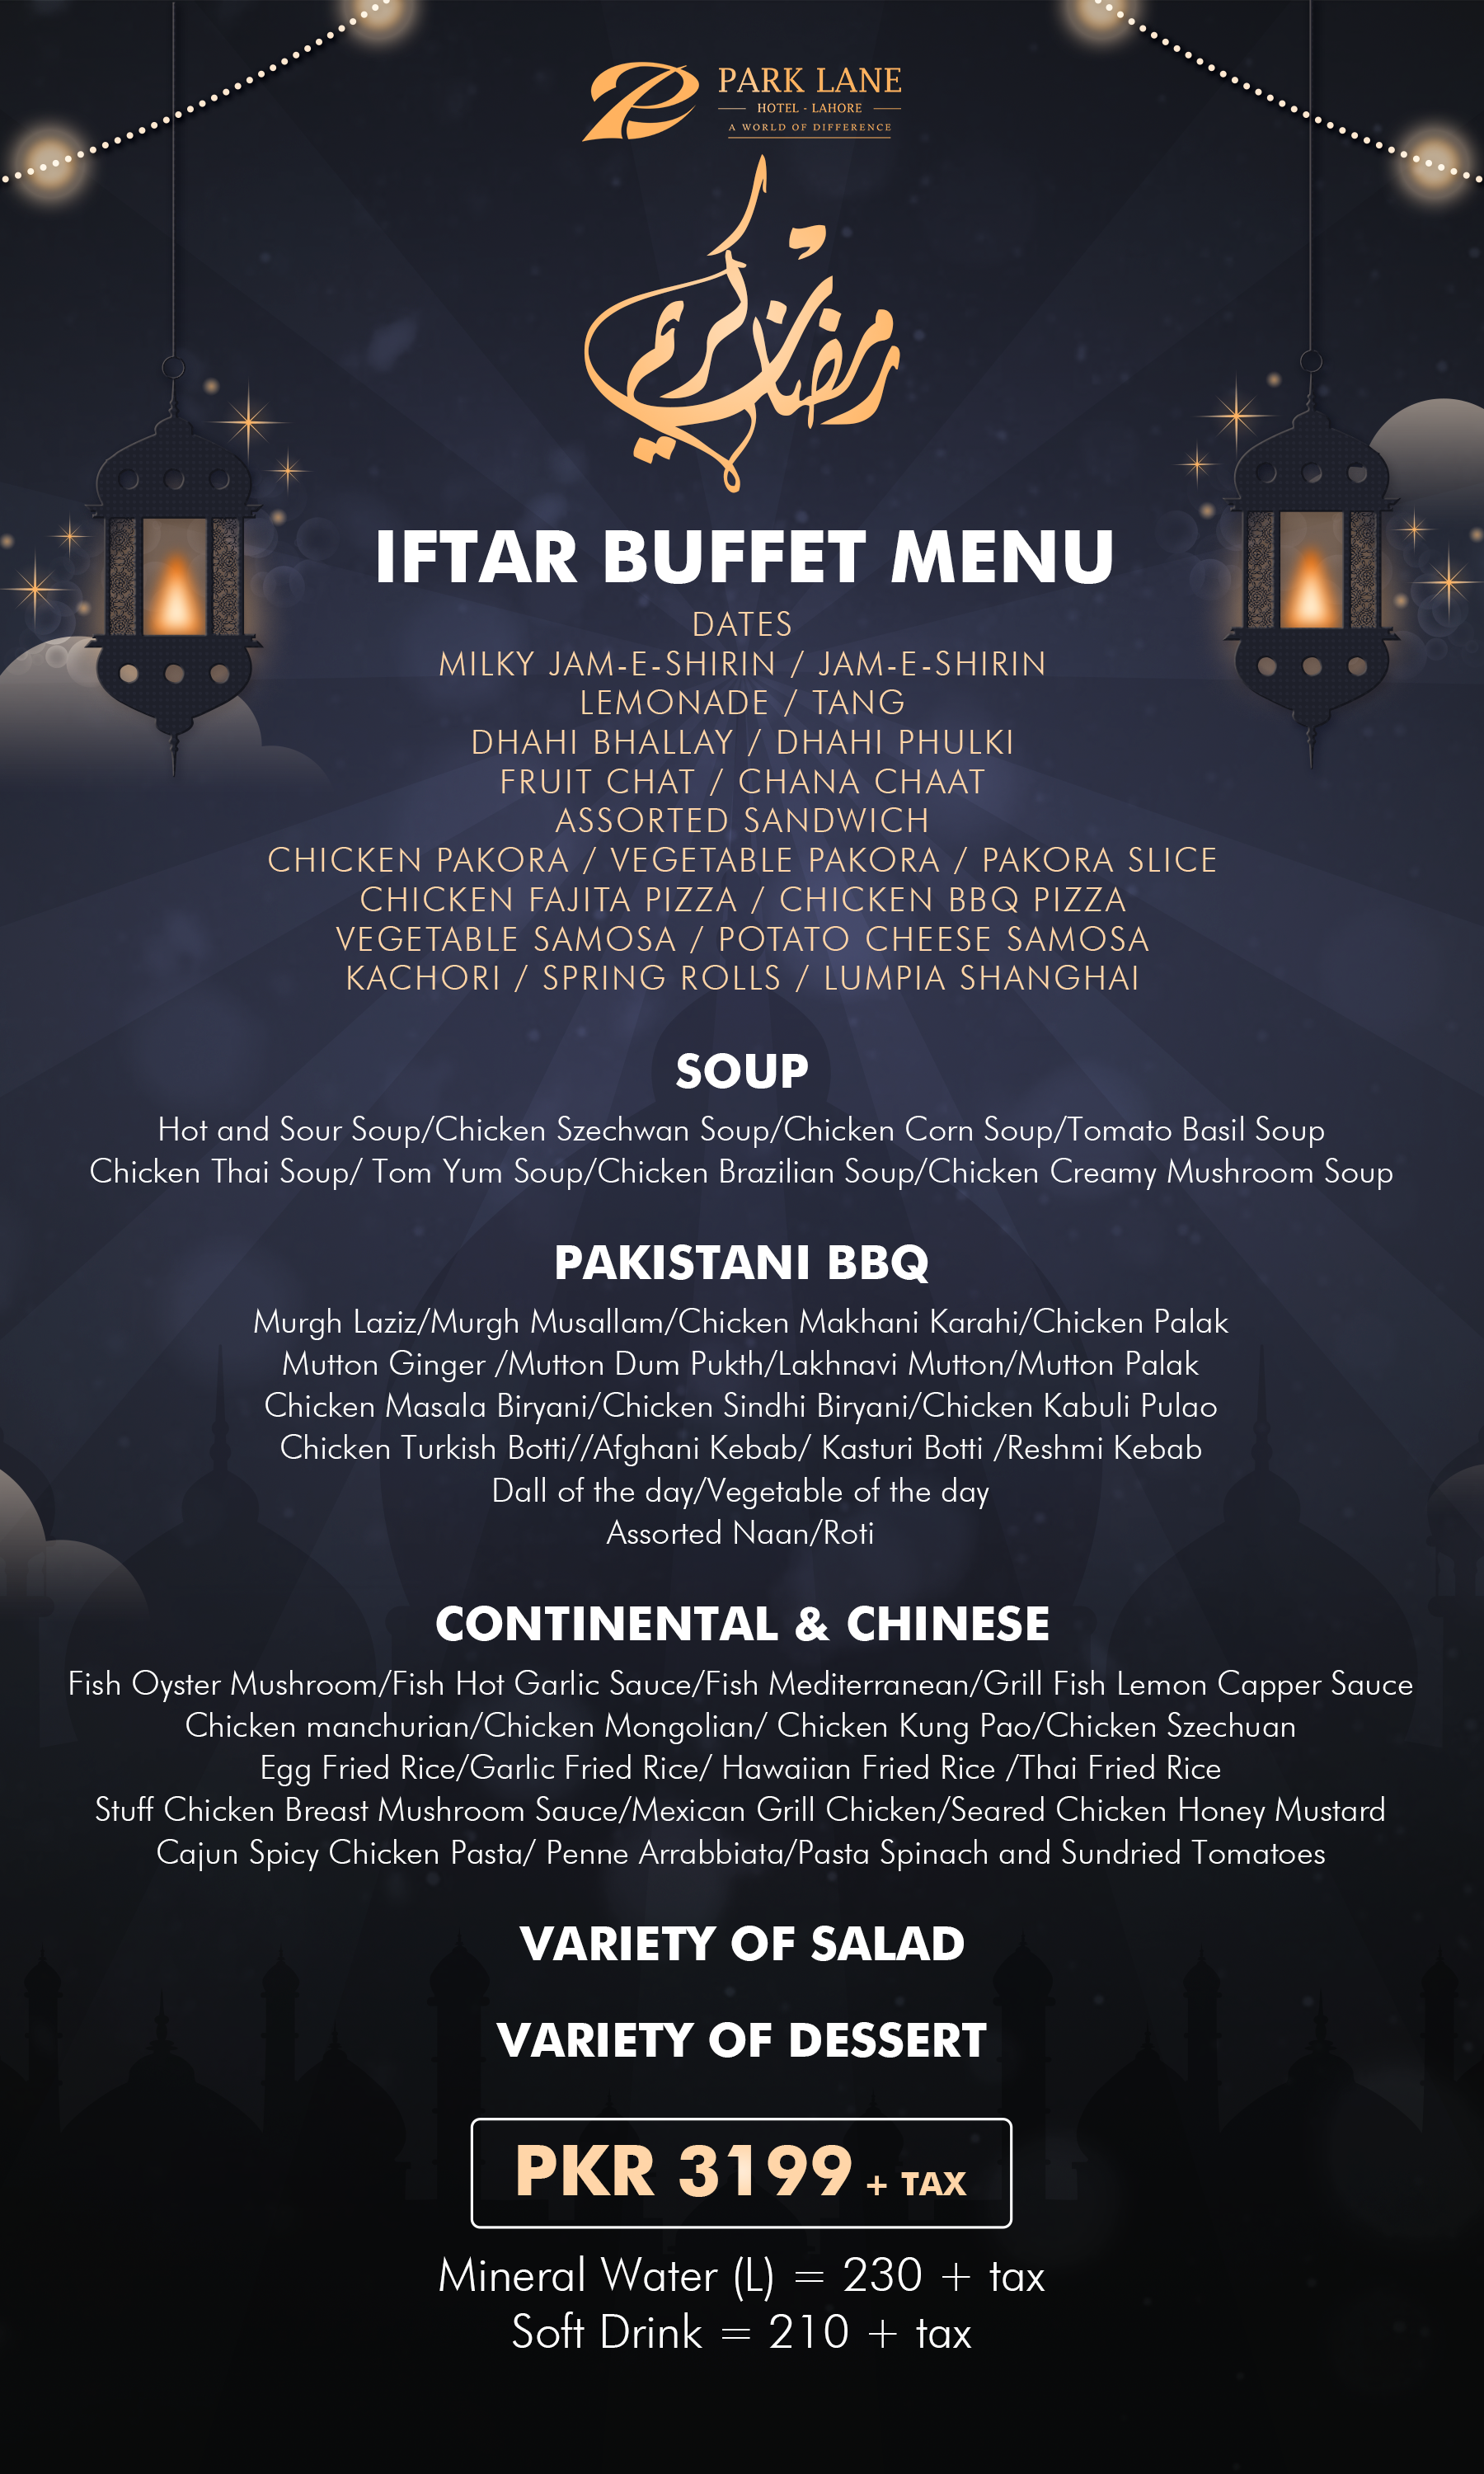 Pak Lane Hotel Iftar Buffet: